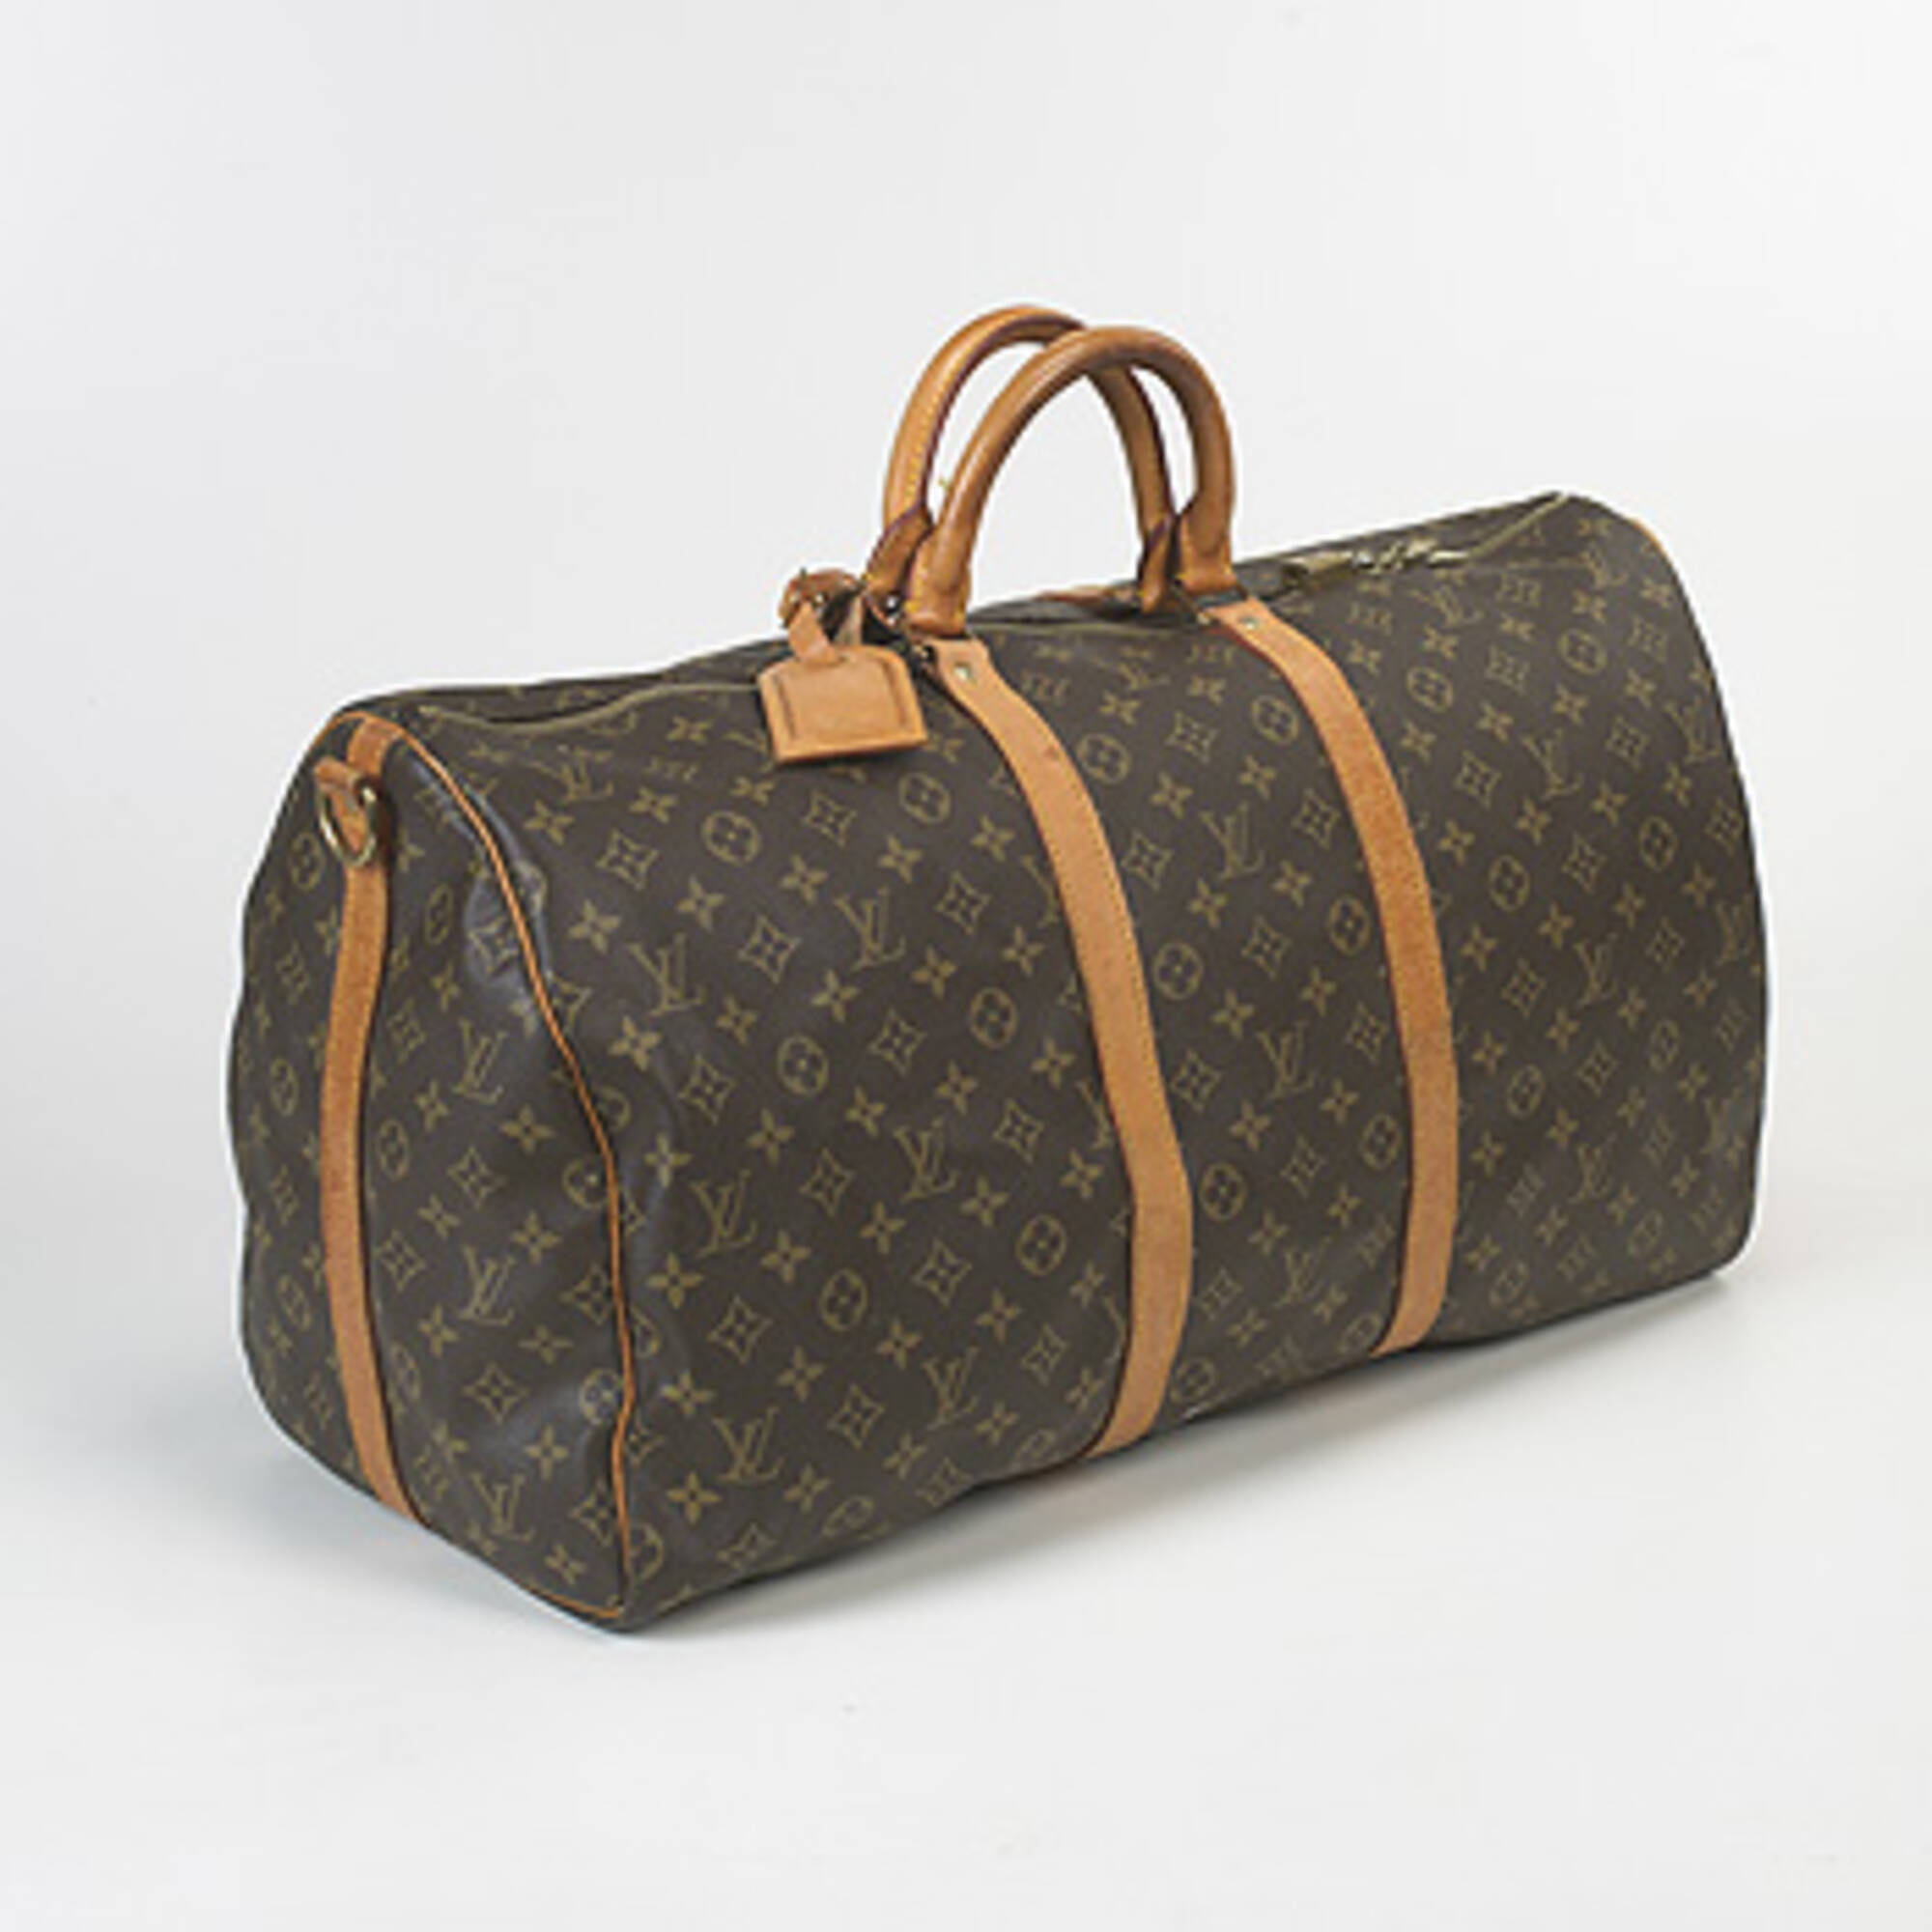 Louis Vuitton Travel Bag Auction